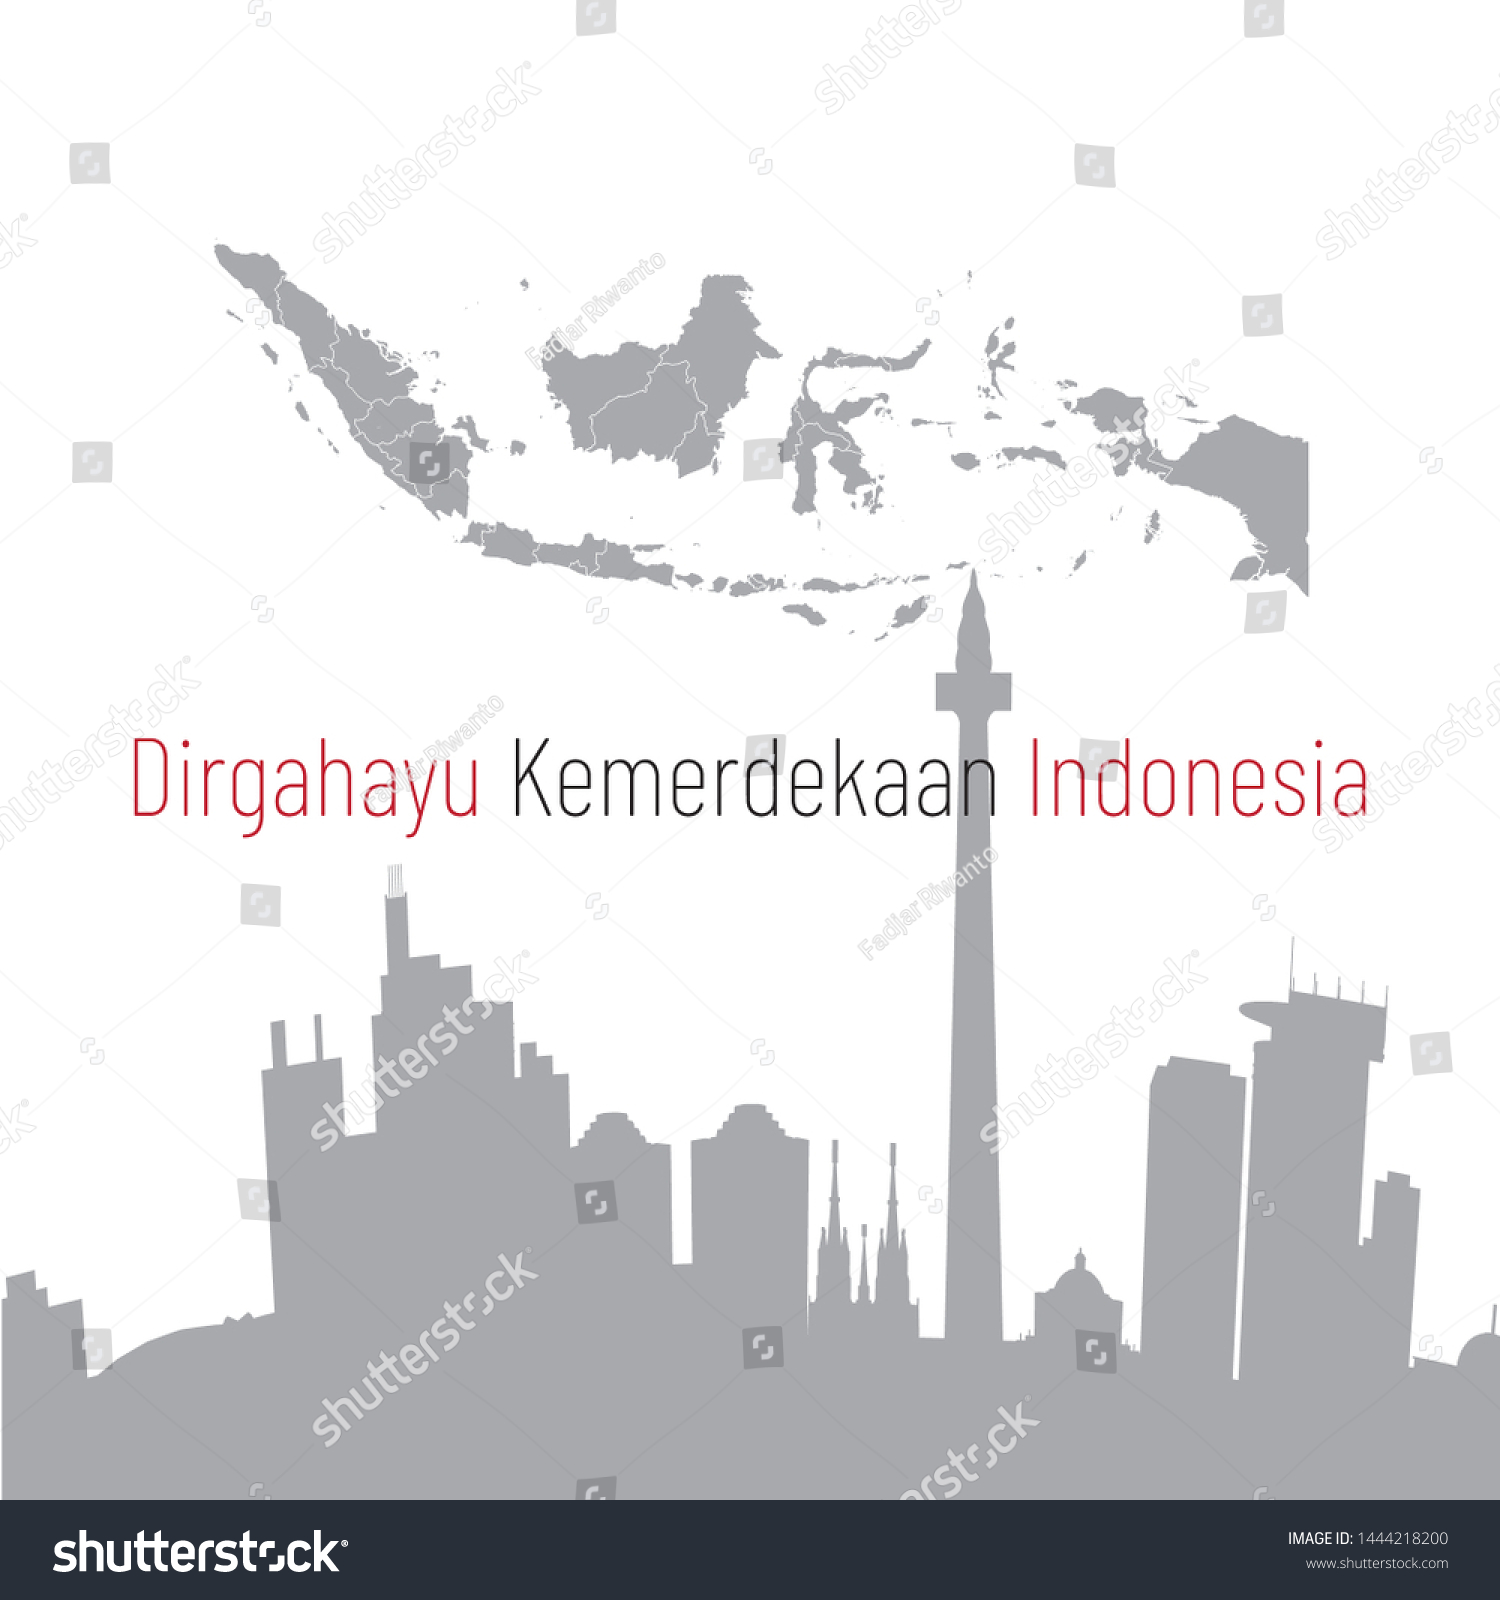 Dirgahayu Kemerdekaan Republik Indonesia Poster Royalty Free Stock Vector 1444218200 7245